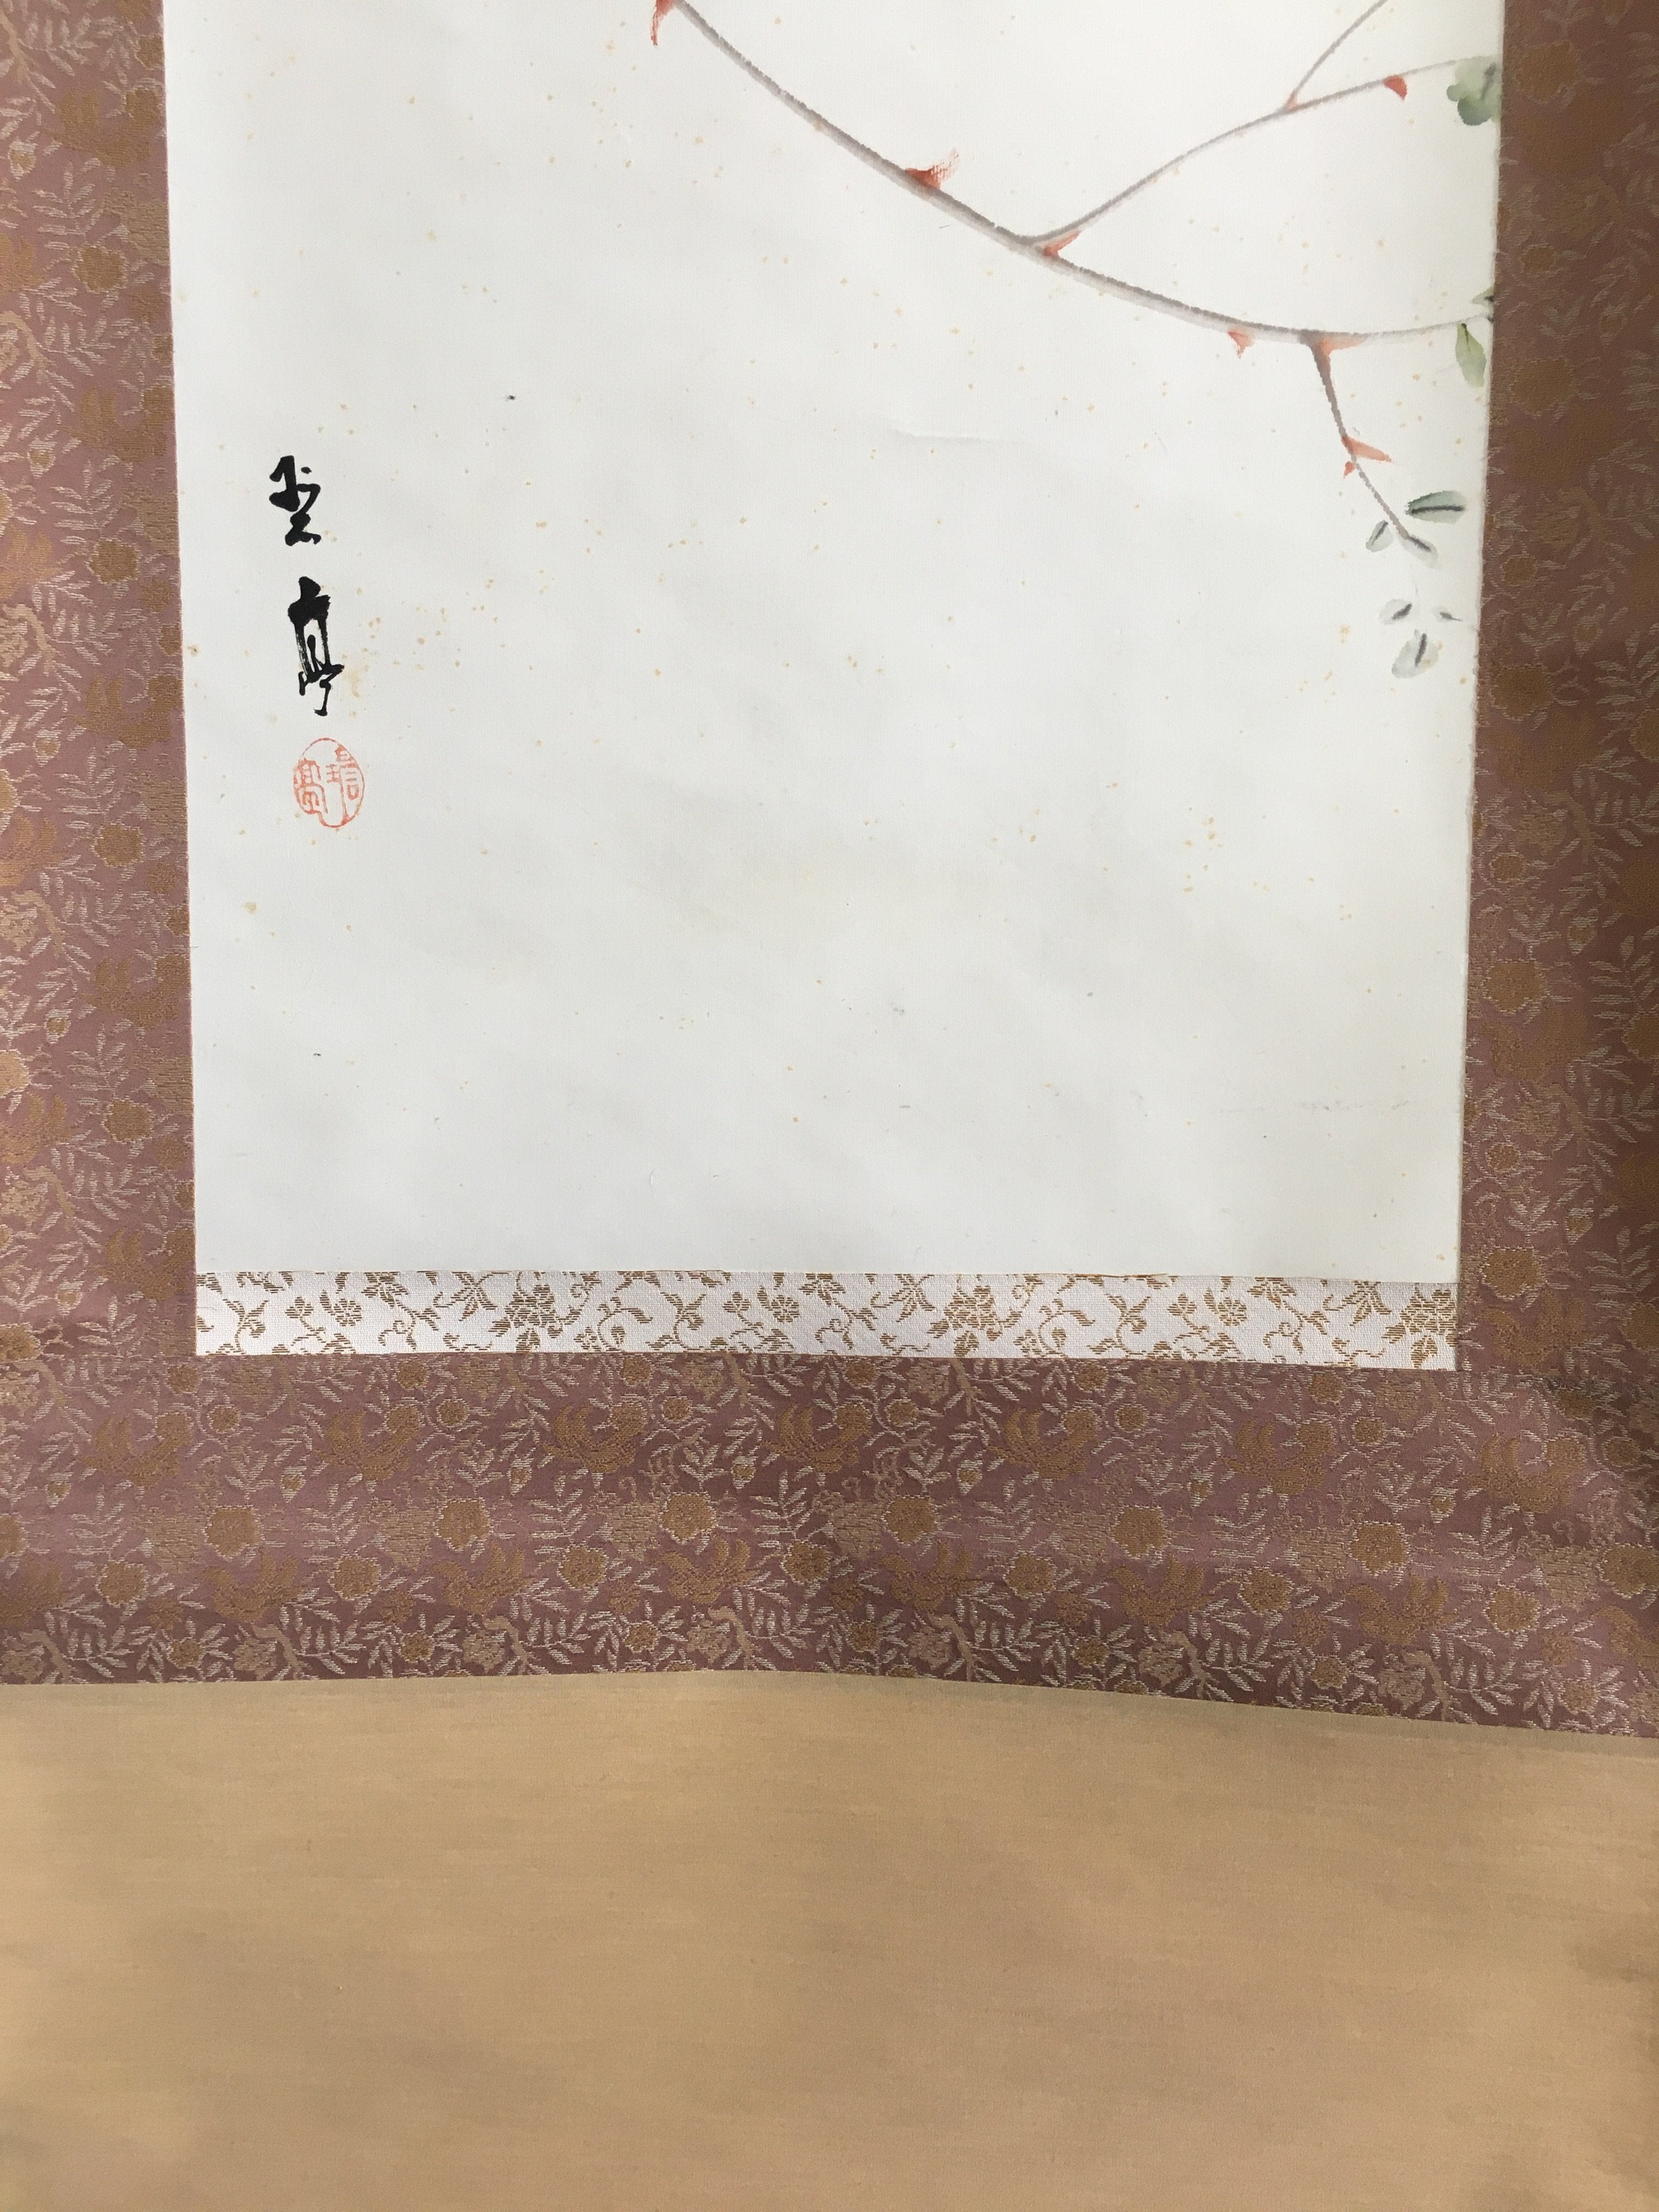 Japanese Hanging Scroll Vtg Kakejiku Kakemono Painting Pink Rose Flower SC693